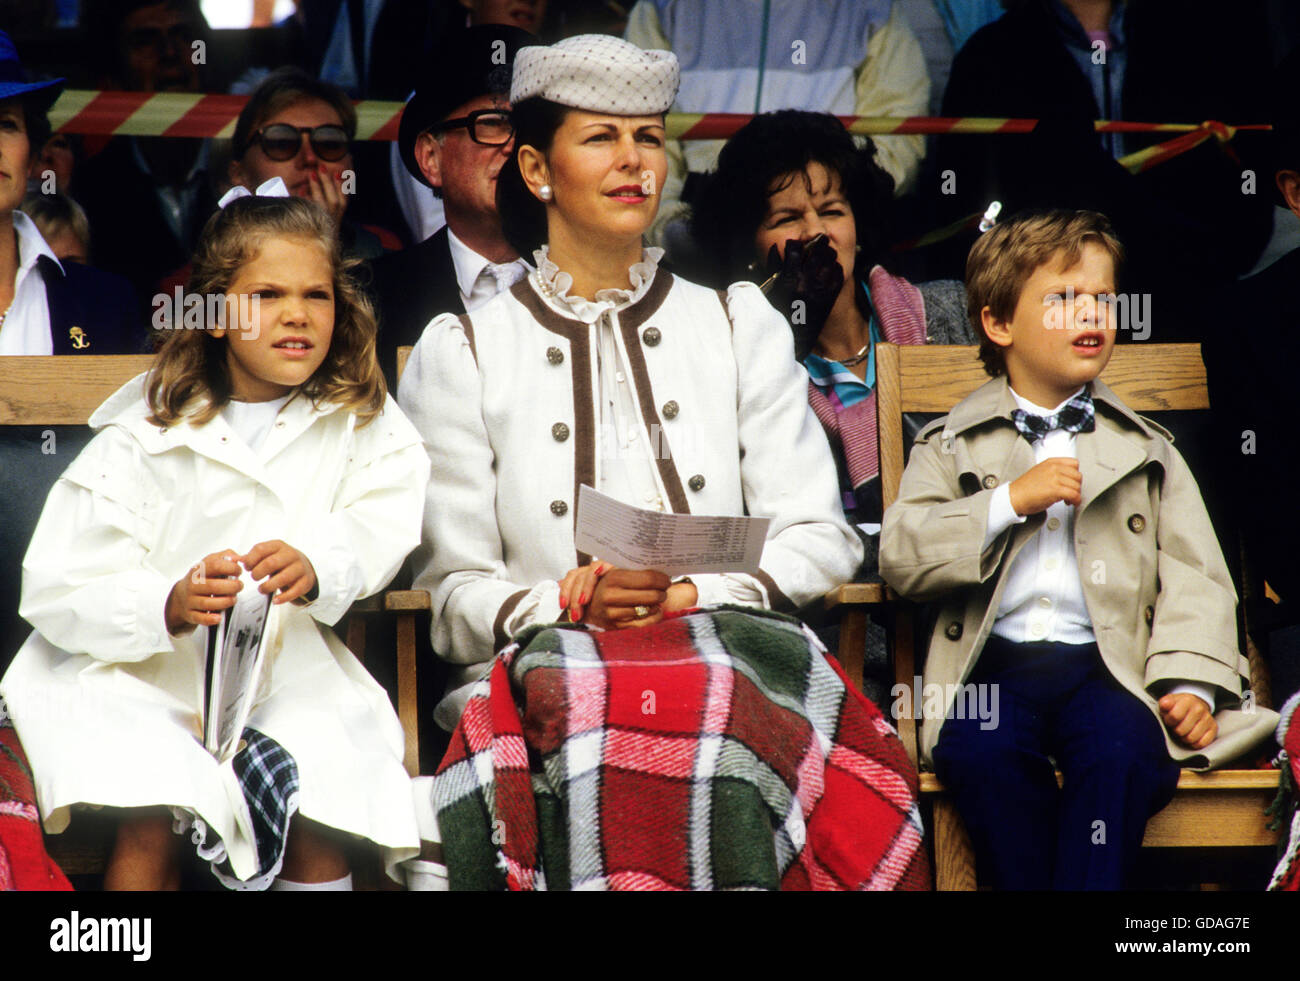 la-reina-silvia-con-la-princesa-heredera-victoria-y-el-principe-carl-philip-en-una-competicion-ecuestre-1985-gdag7e.jpg